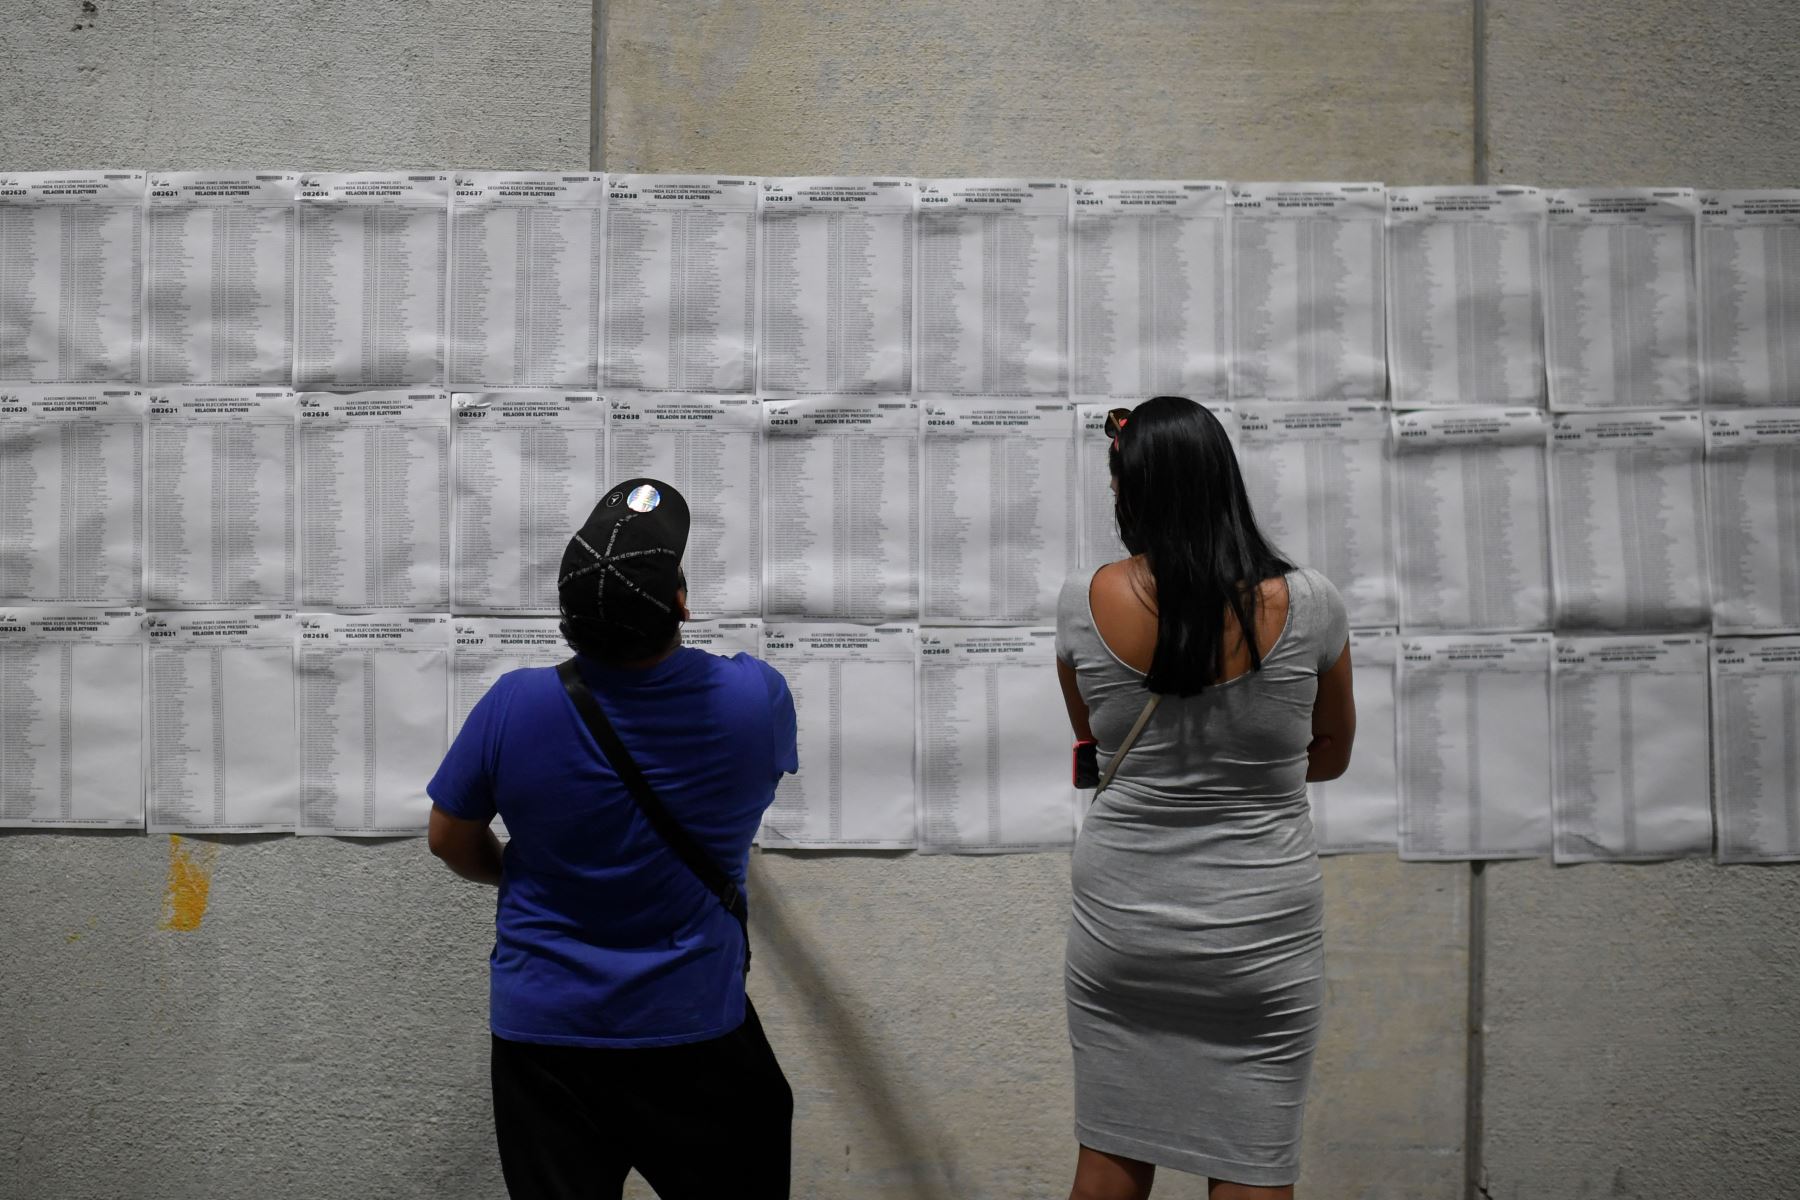 Los residentes peruanos verifican las listas en un colegio electoral del centro de congresos Ifema en Madrid, antes de emitir su voto para la segunda vuelta de las elecciones presidenciales.
Foto: AFP